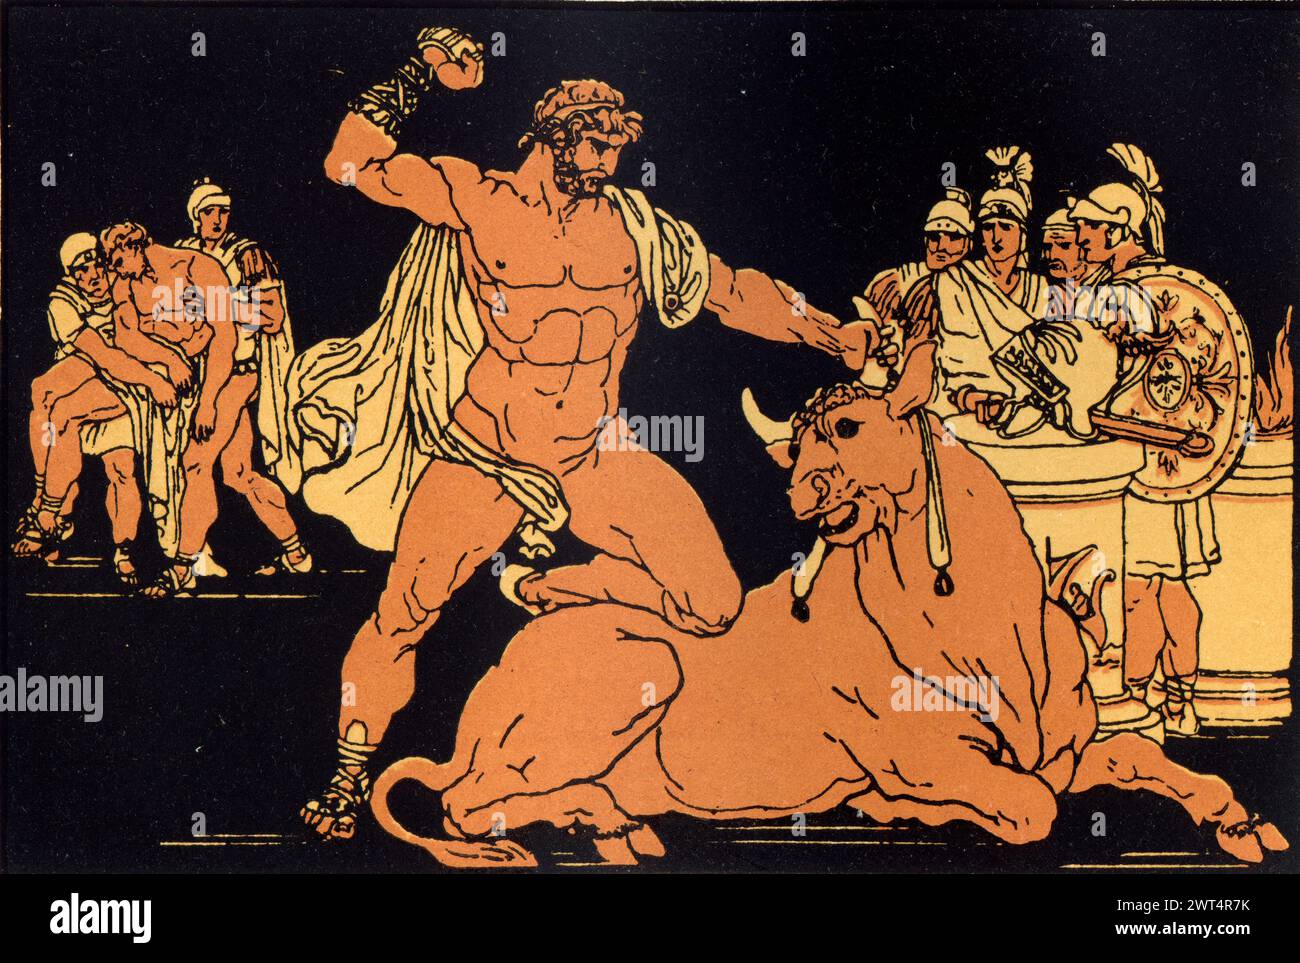 Alte Illustration römische Mythologie, Entellus tötet den Stier, Aeneid ein lateinisches Epos, das die legendäre Geschichte von Aeneas erzählt, einem Trojaner, der geflohen ist Stockfoto